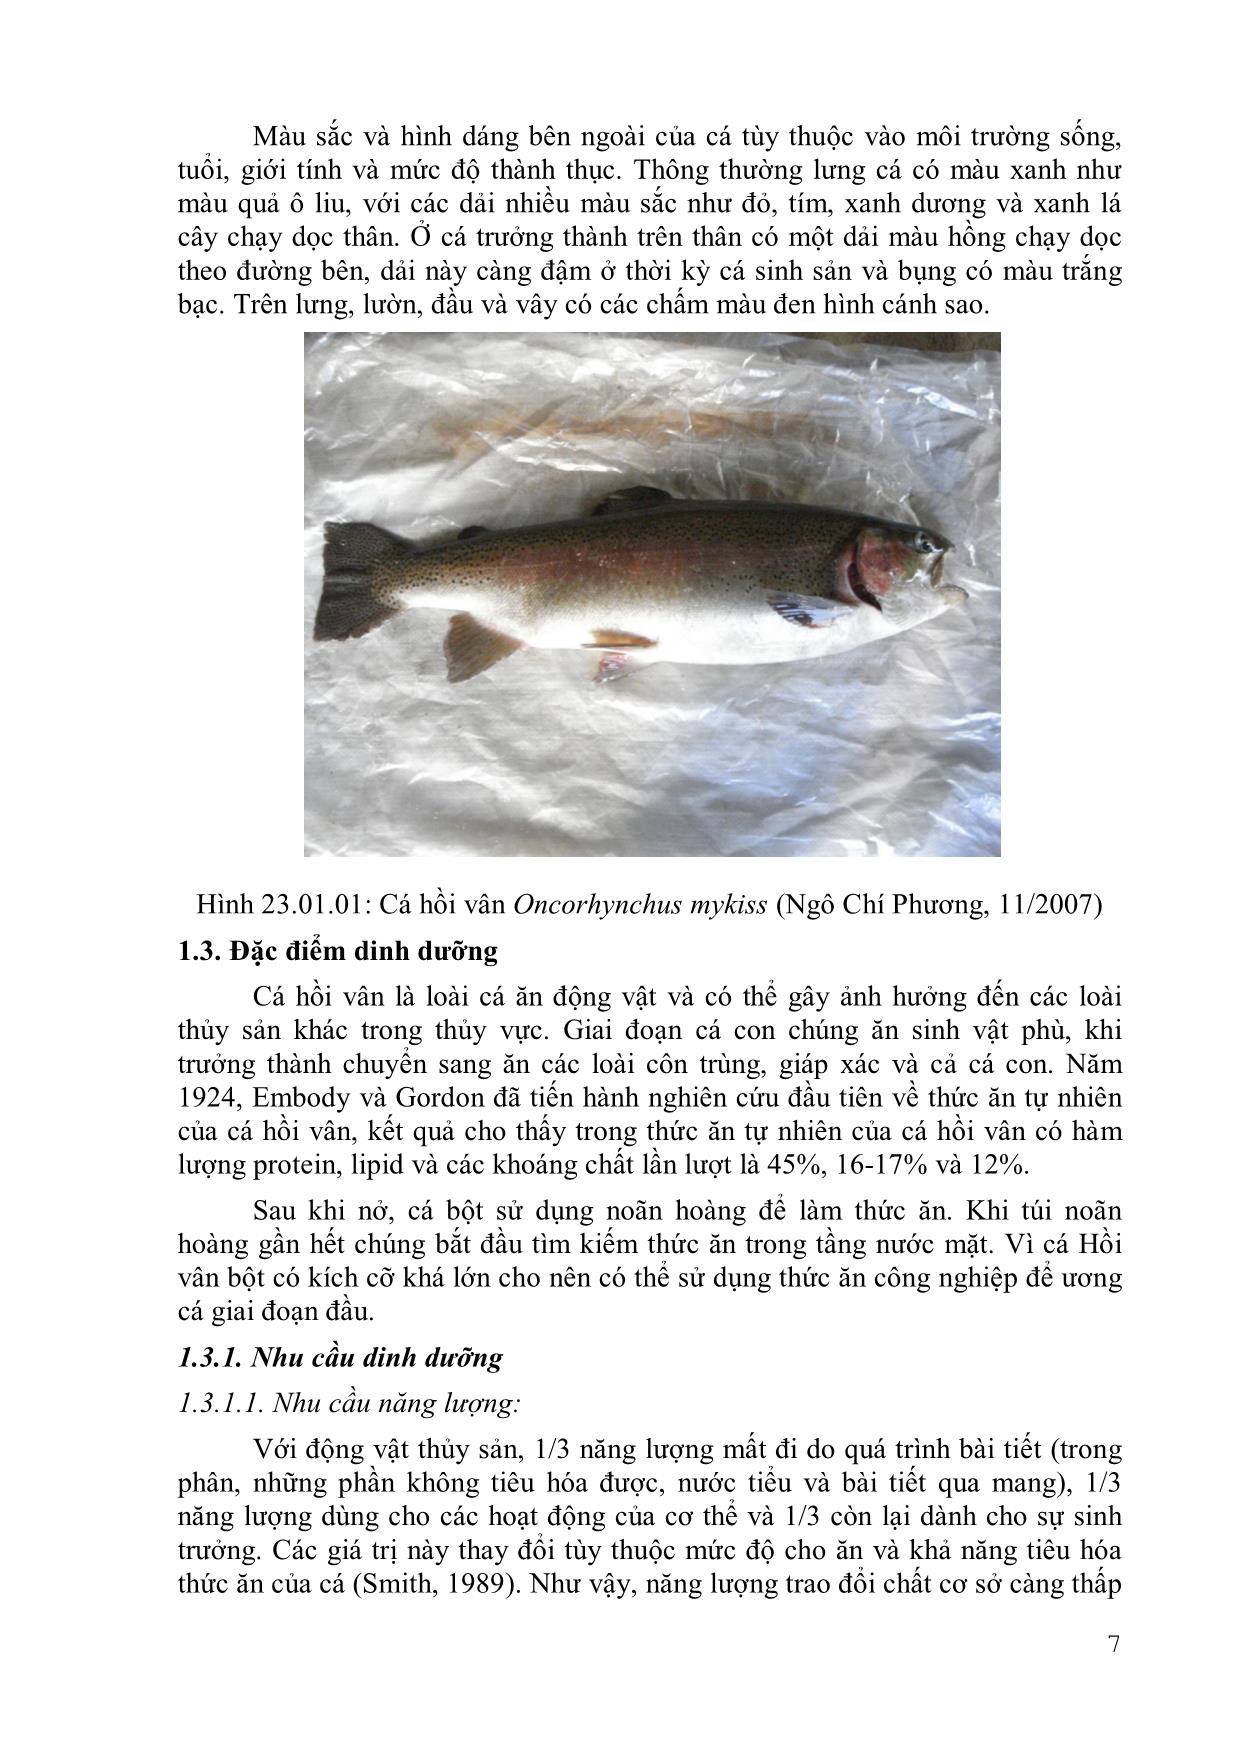 Giáo trình Nuôi cá nước lạnh trang 8